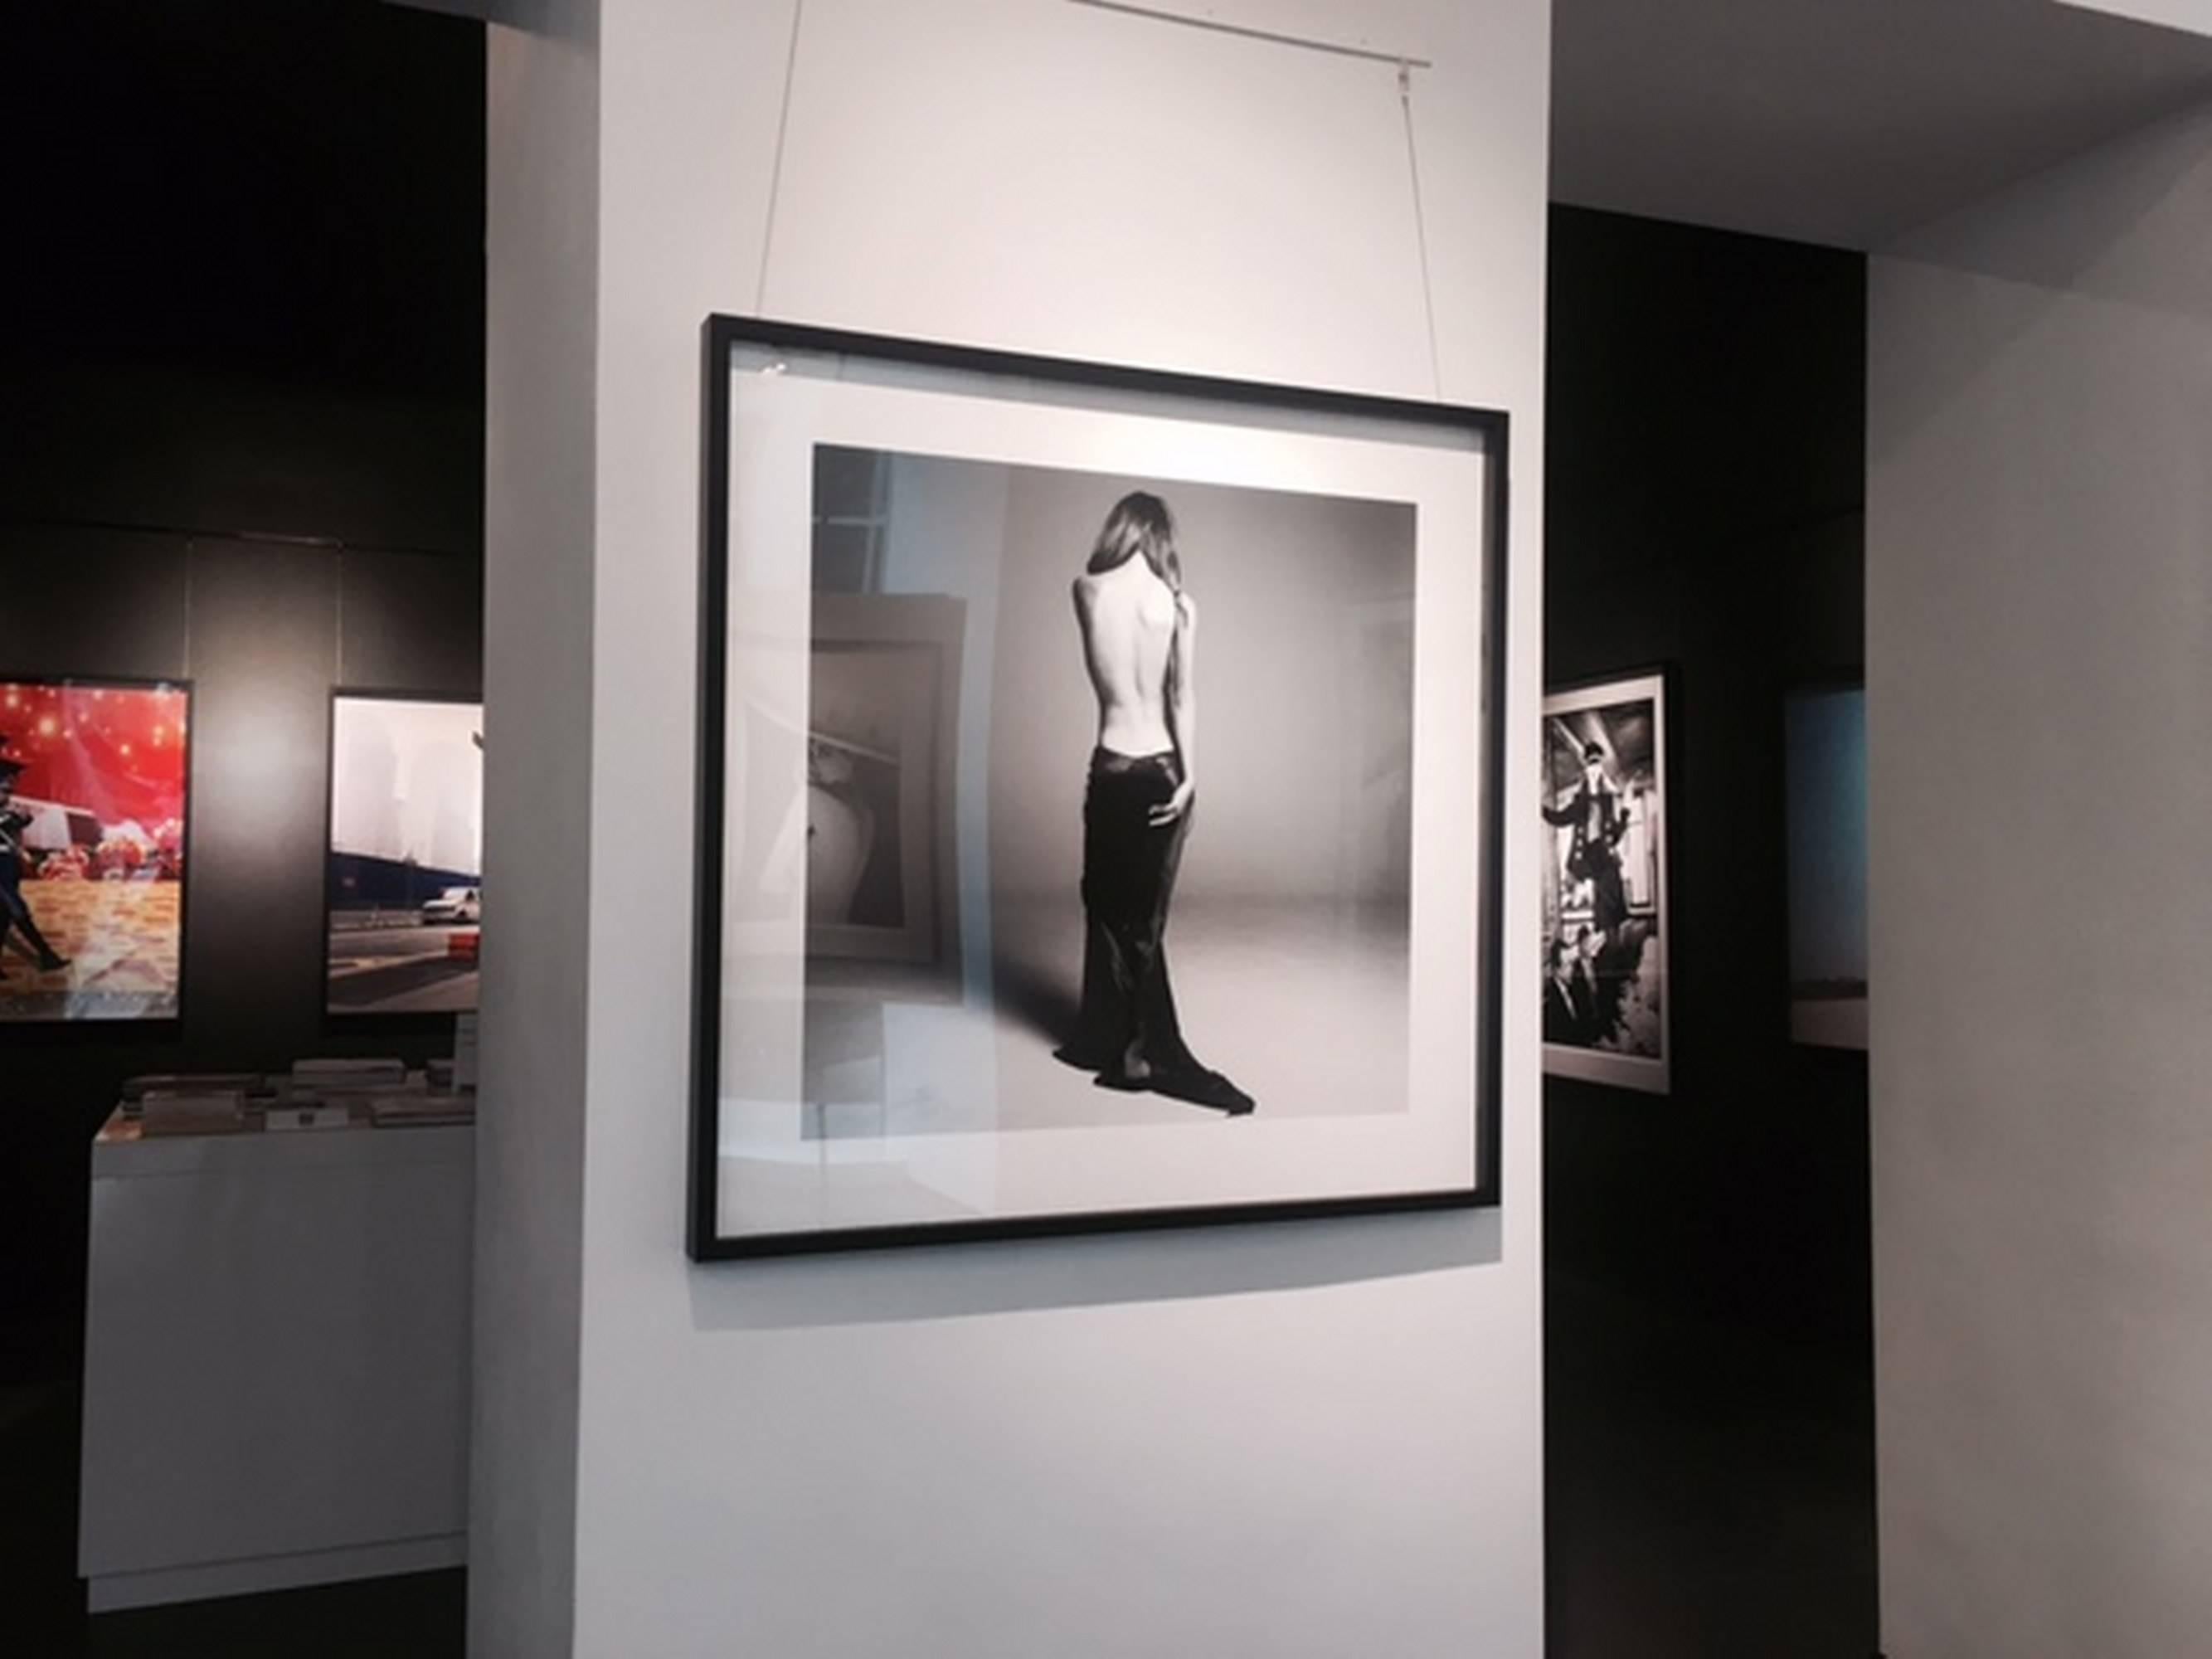 Helena Christensen, campagne pour une sexualité sans risque, mannequin posant le dos découvert - Photograph de Michel Comte